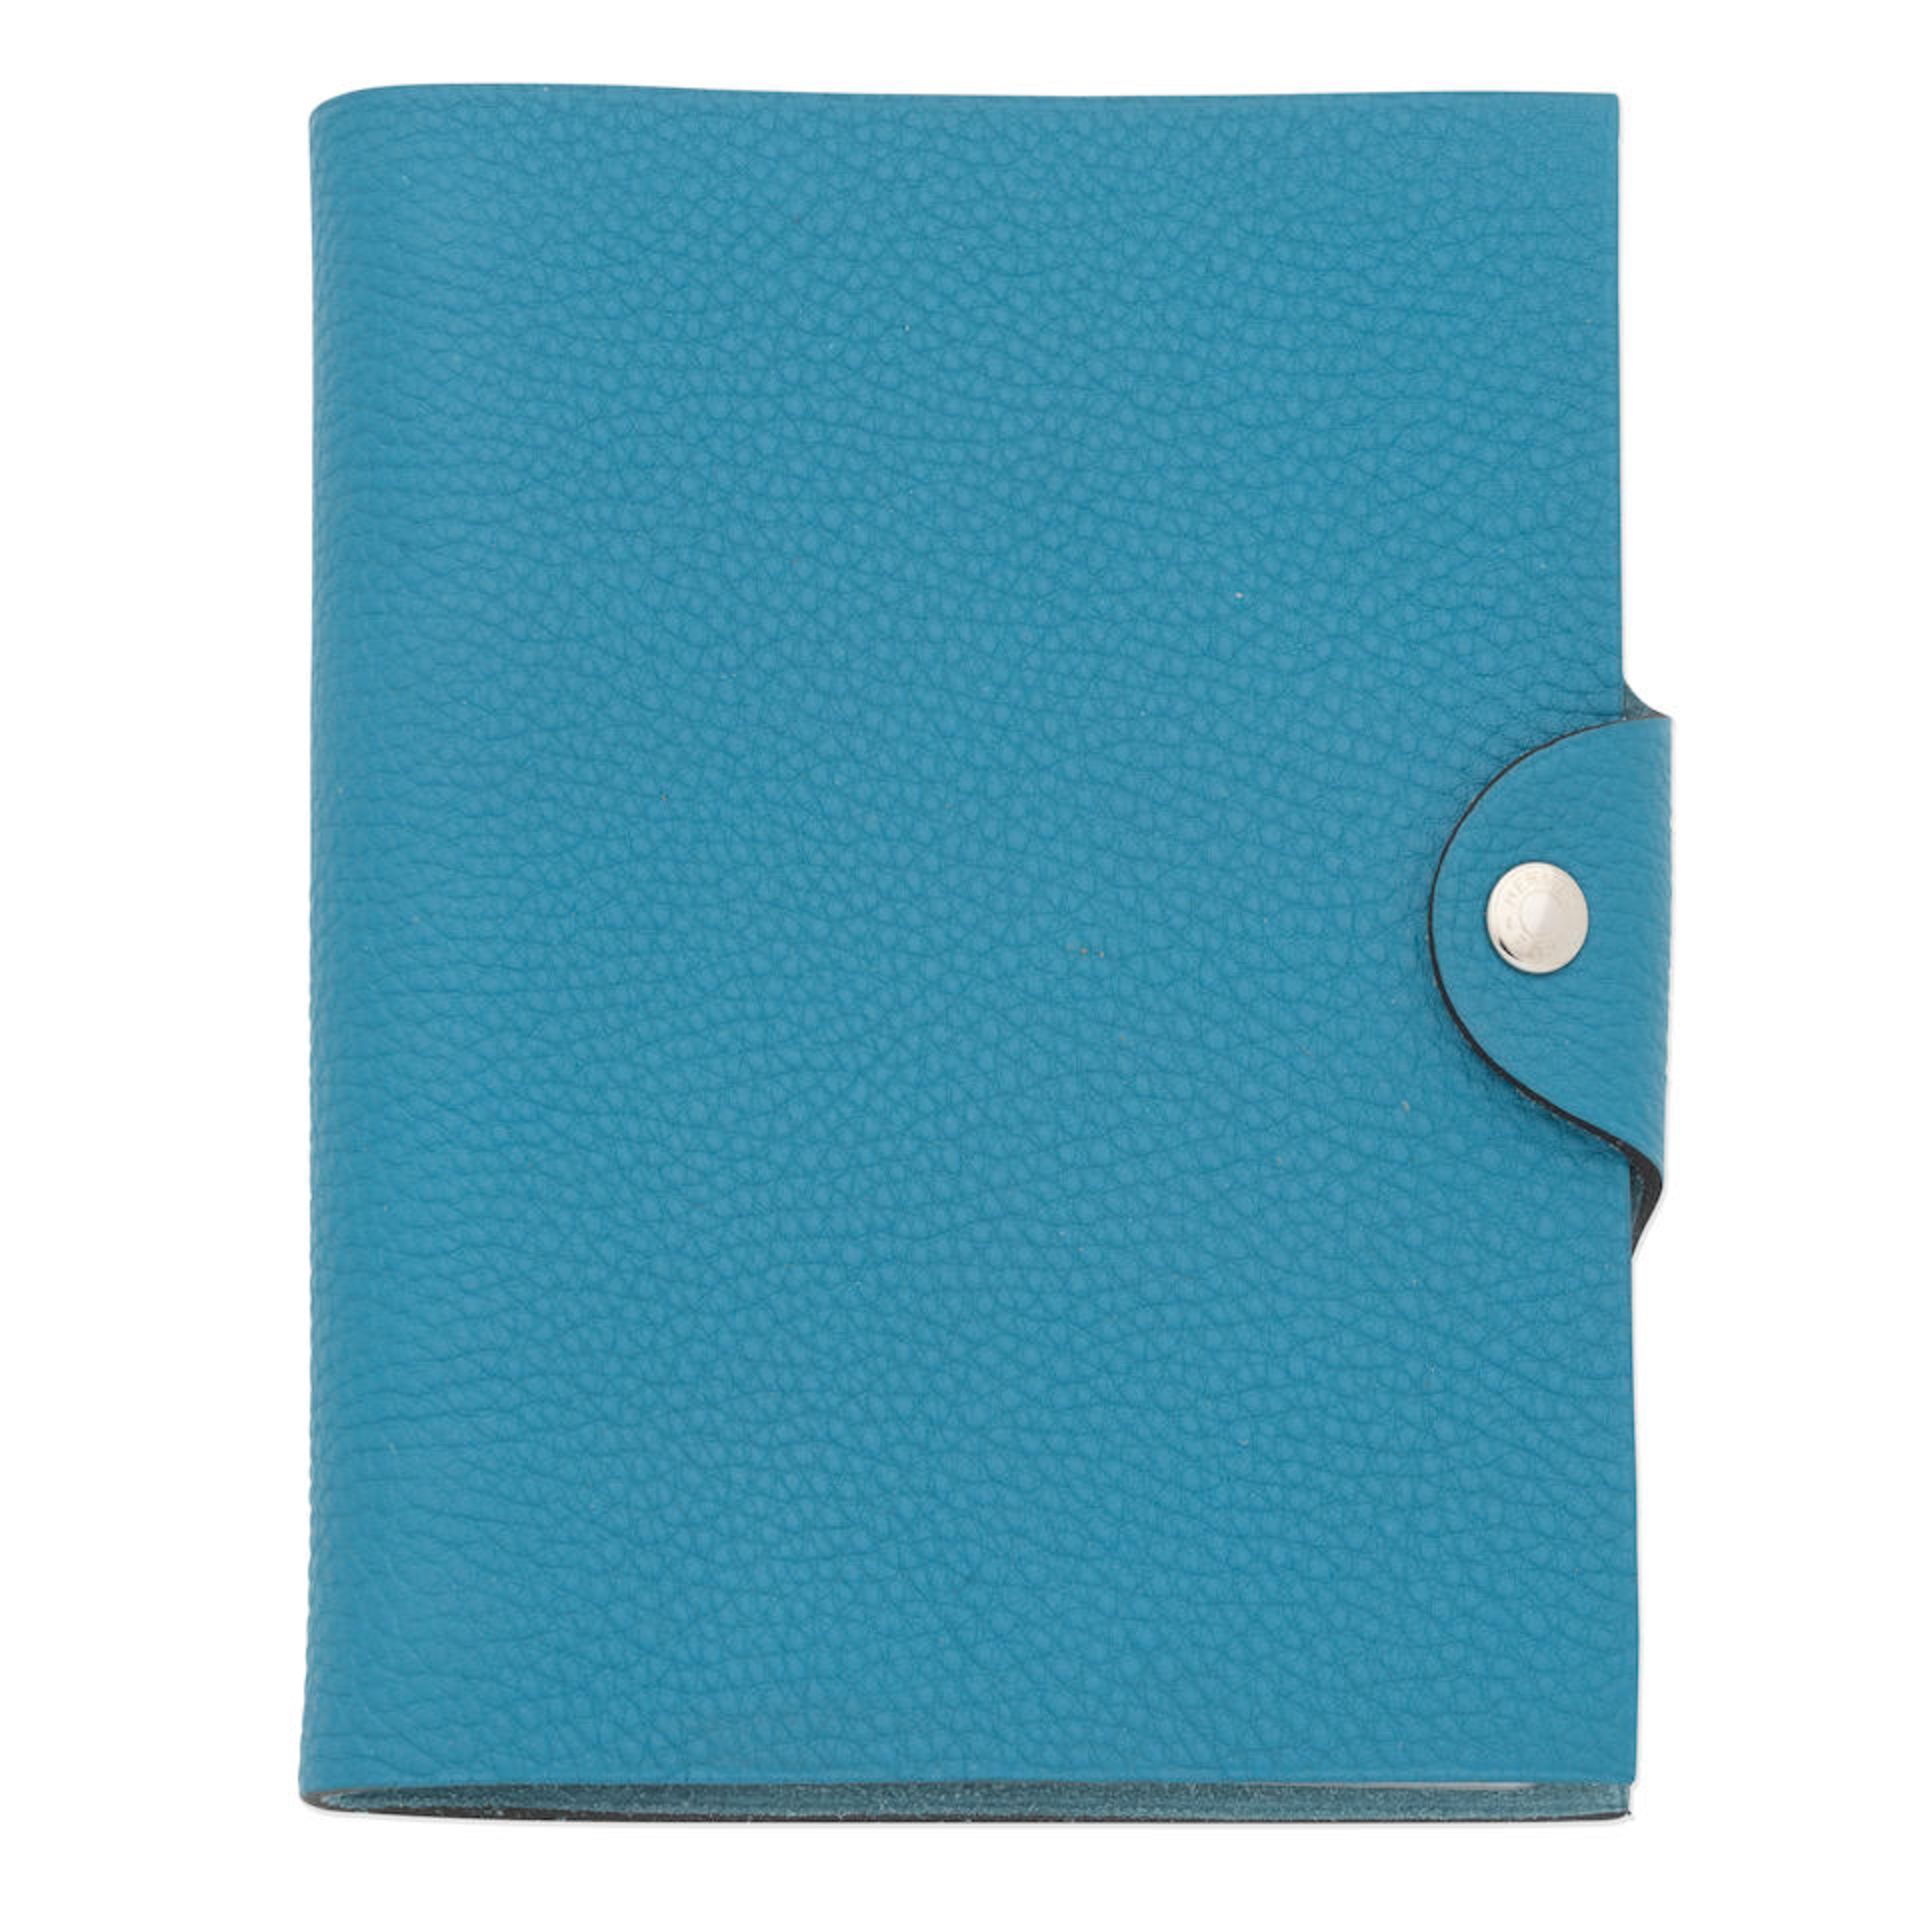 Hermès: a Bleu Jean Togo Leather Ulysse Agenda Cover (includes box)